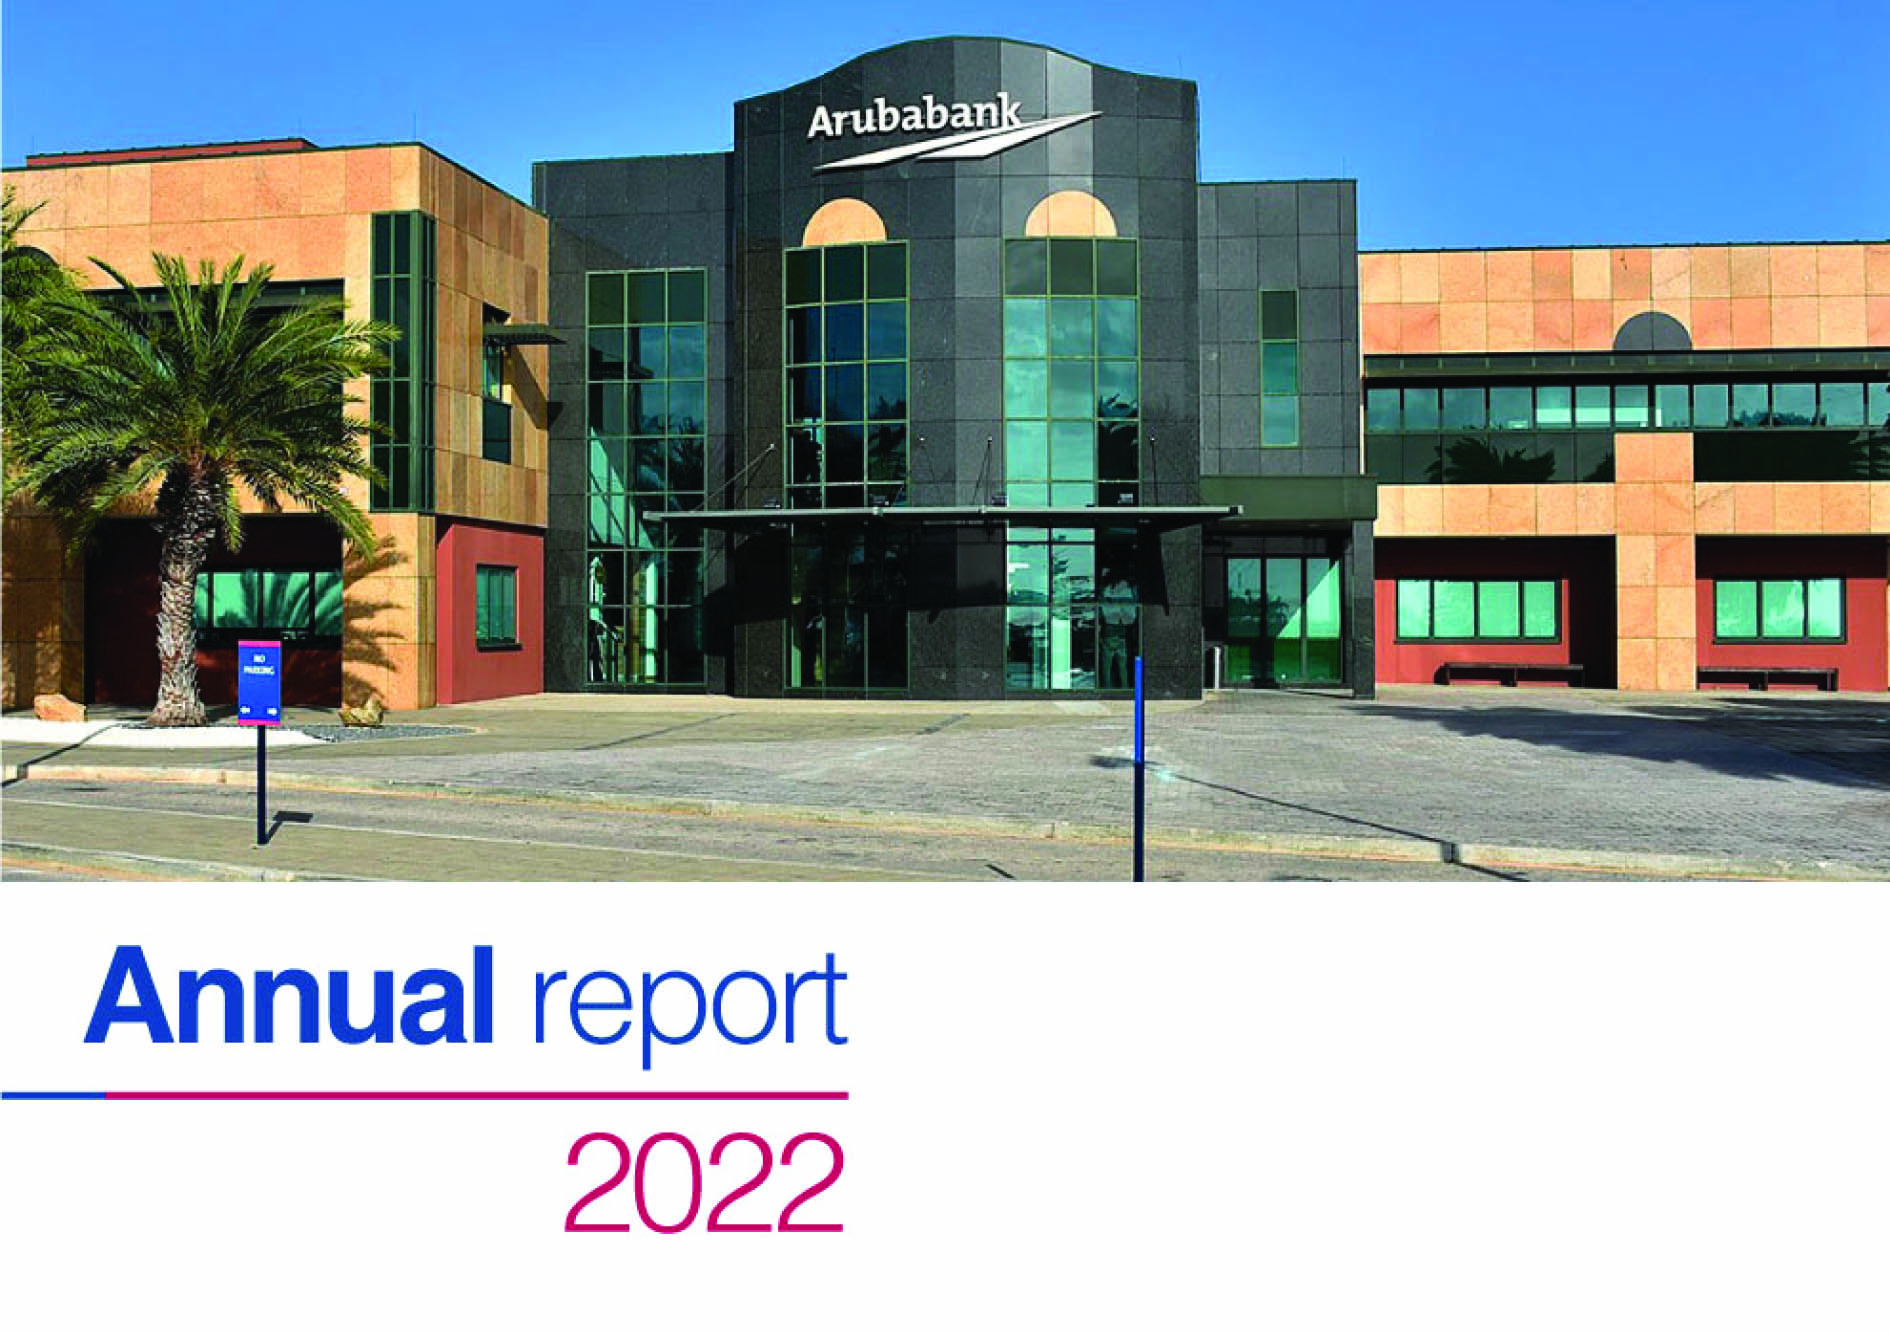 AnnualReport2022-Full-Image